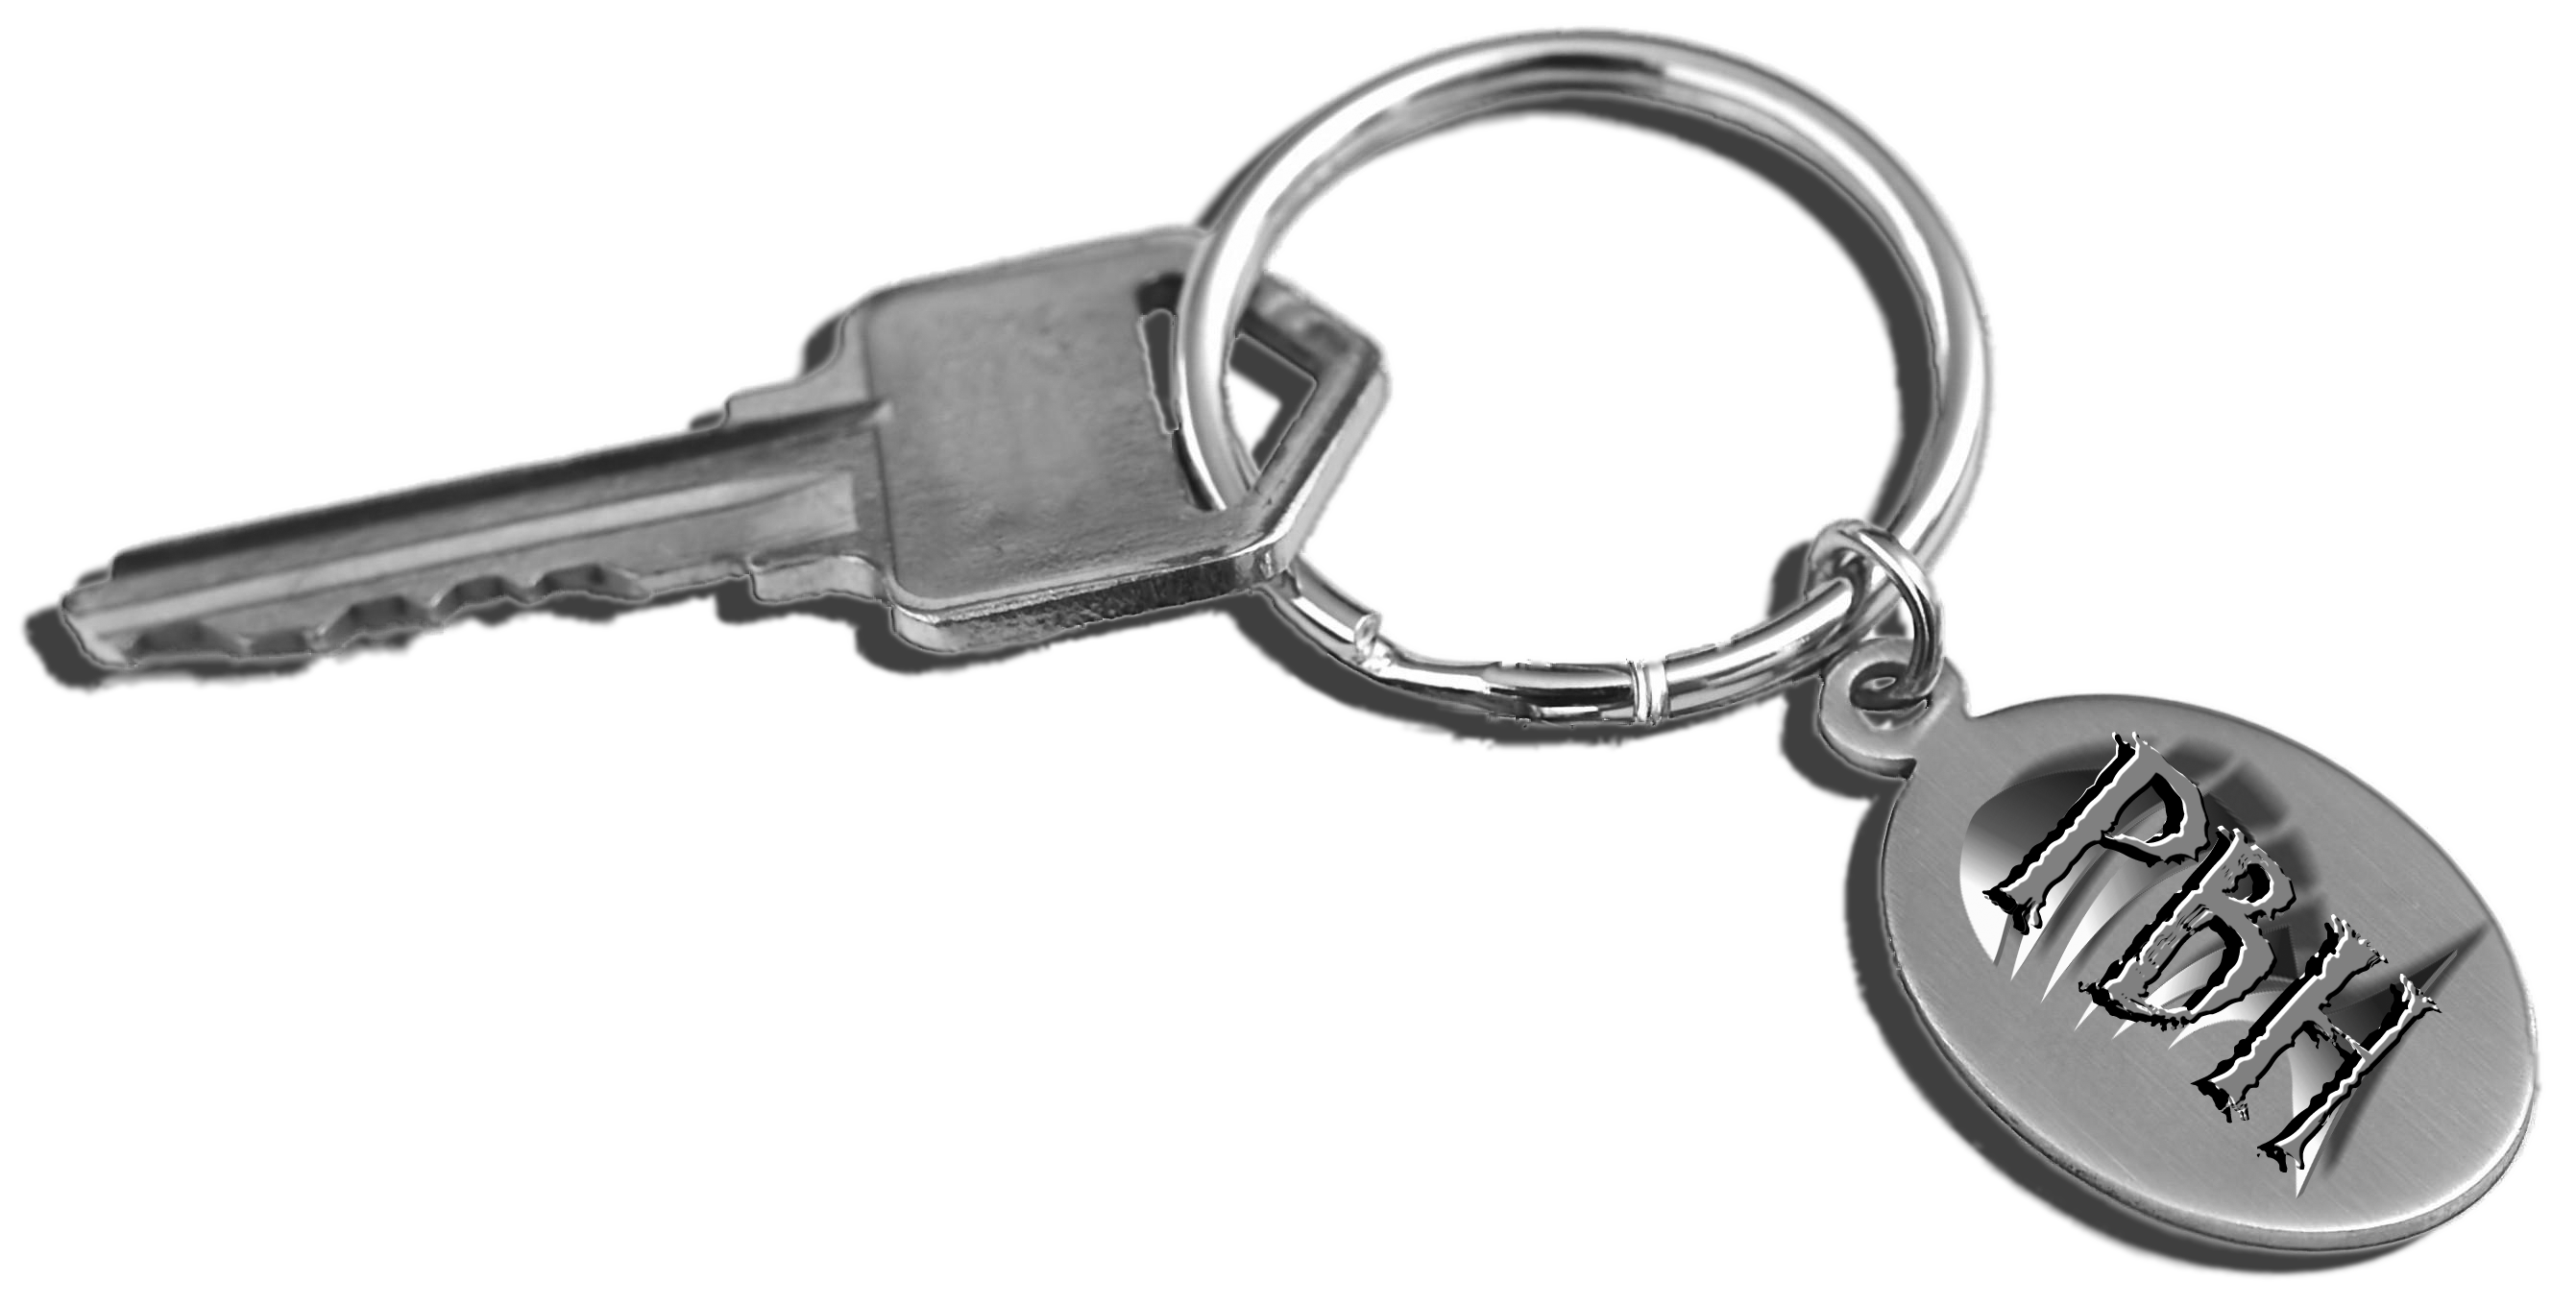 Keys Transparent Image PNG Image